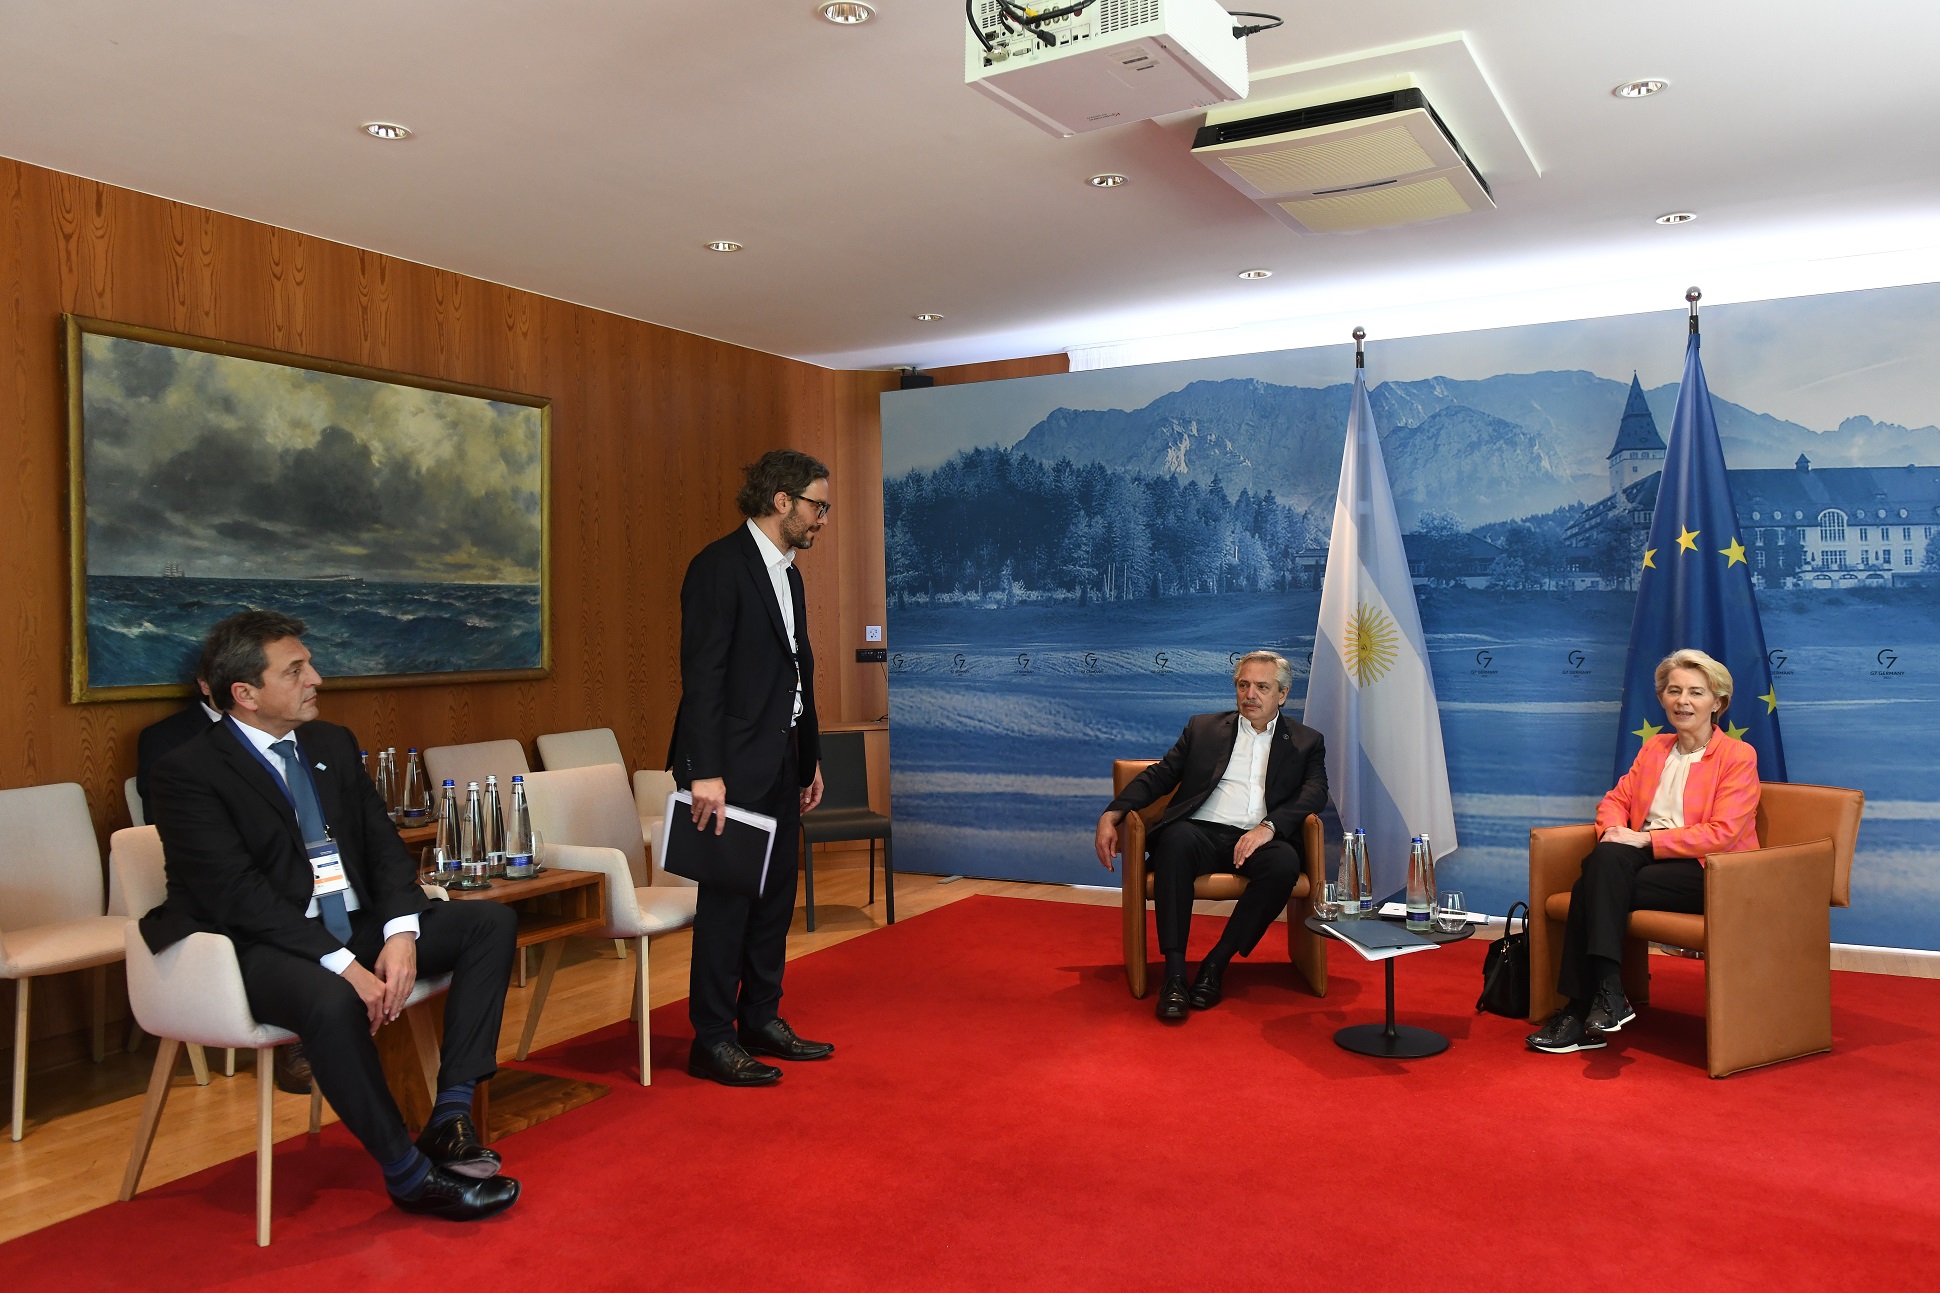 El presidente mantuvo un encuentro bilateral con Ursula von der Leyen, titular de la Comisión Europea